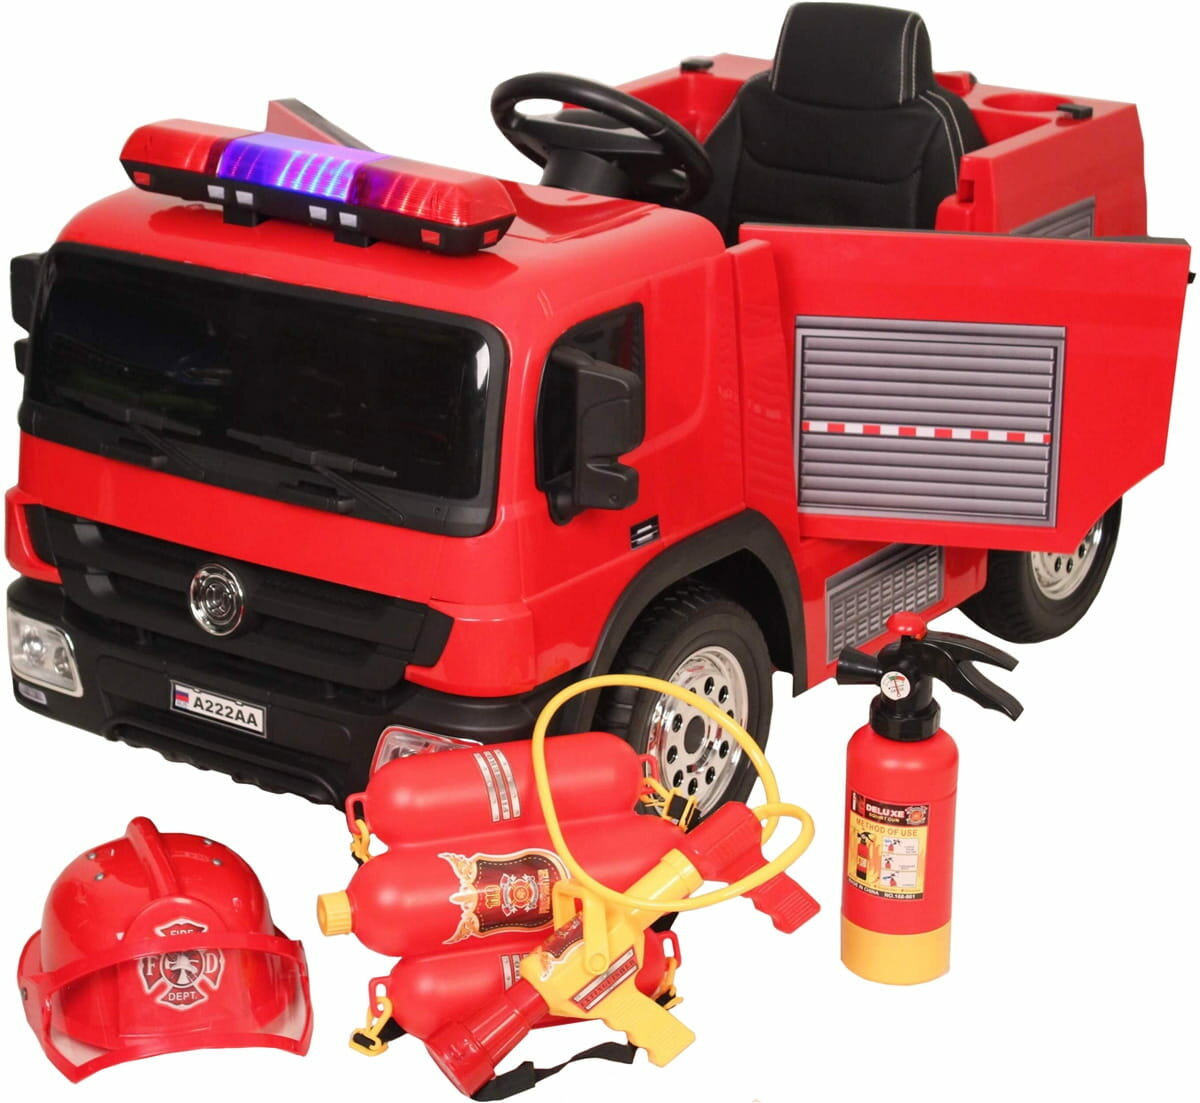 Электромобиль RiverToys Пожарная машина A222AA с набором пожарника